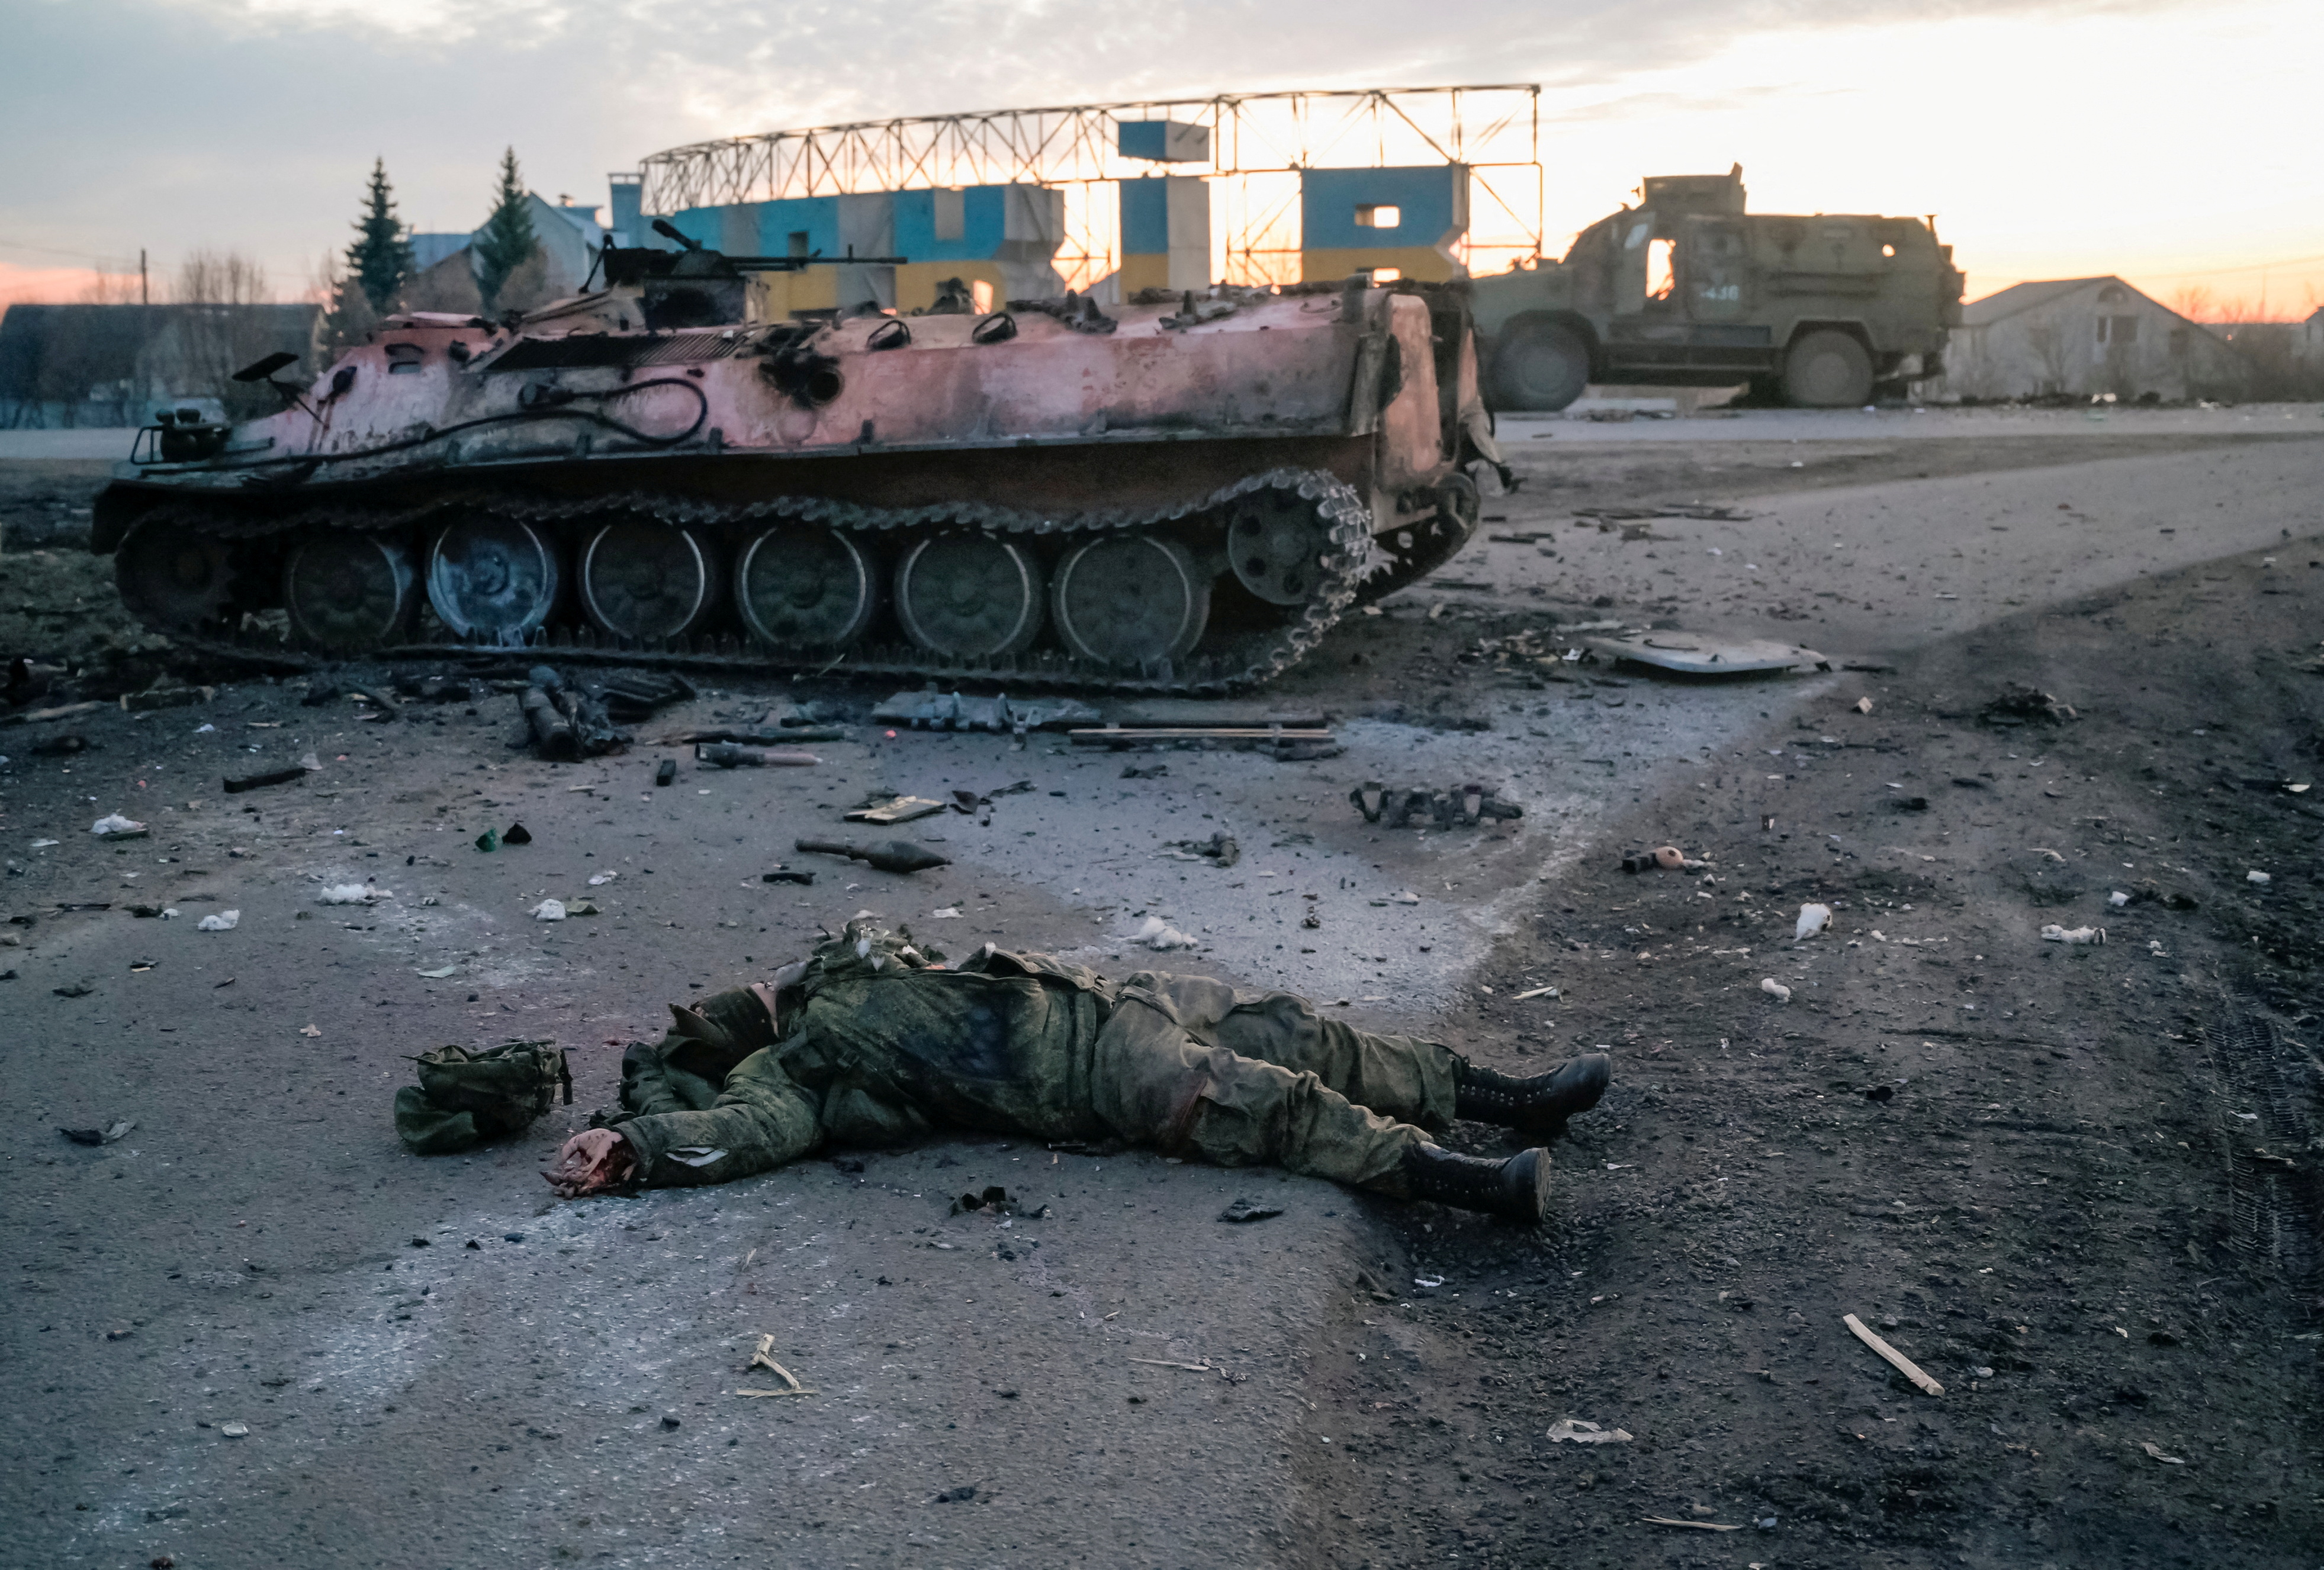 El cuerpo de un soldado, sin insignias, que según el ejército ucraniano es un militar ruso muerto en combates, yace en una carretera a las afueras de Kharkiv.